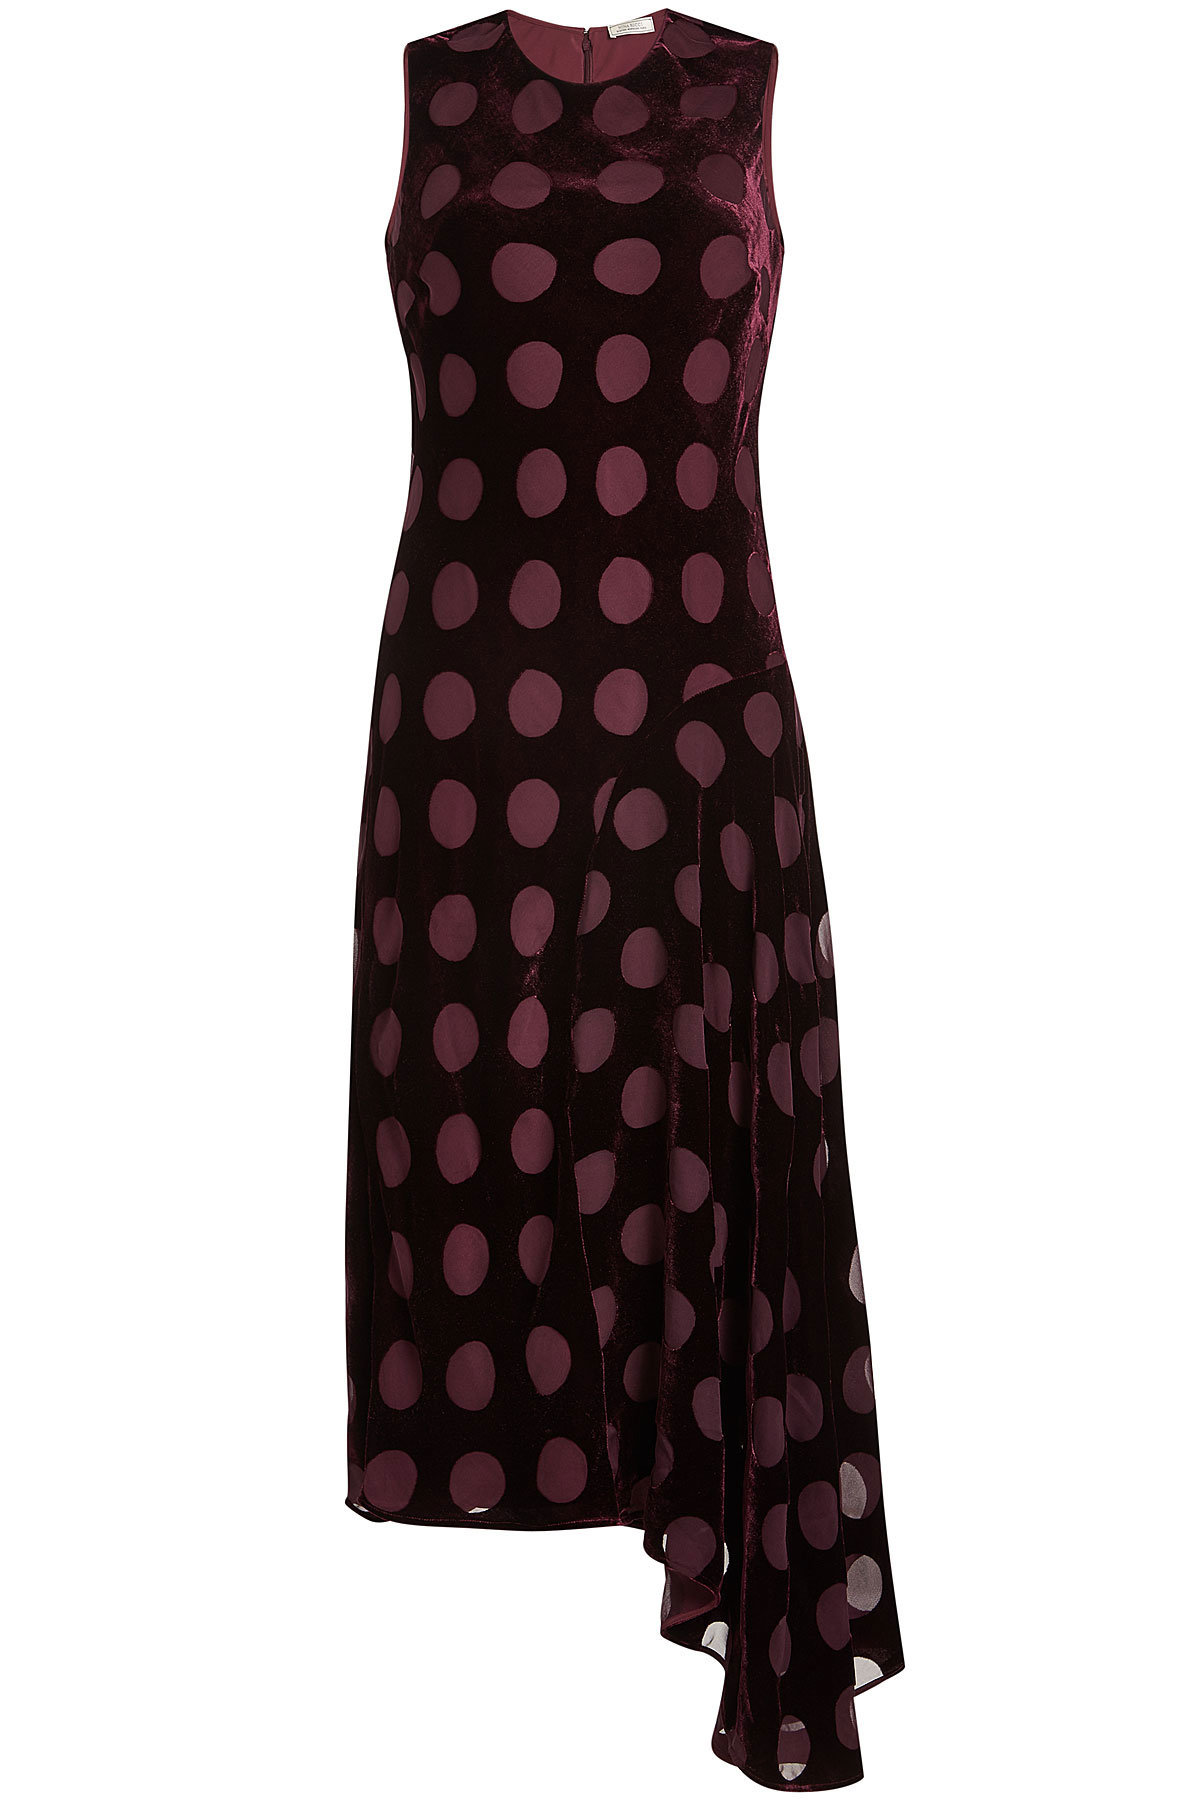 Nina Ricci - Velvet Dress with Chiffon Spots